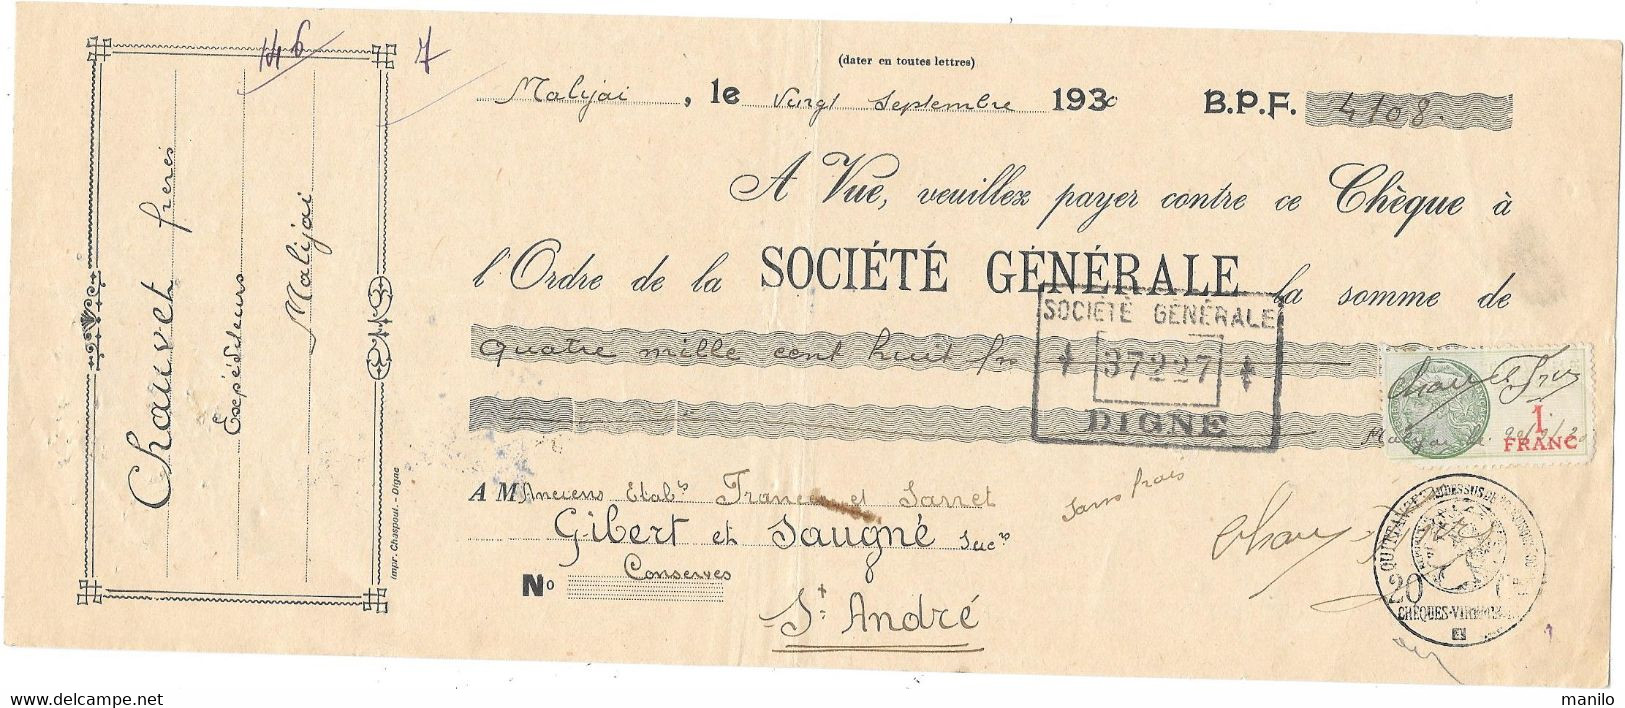 CHEQUE 1930 -  CHAUVET Frères - Expéditeurs  MALIJAI   > GIBERT & SAUGNE   St André Les Alpes - SOCIETE GENERALE Digne - Chèques & Chèques De Voyage